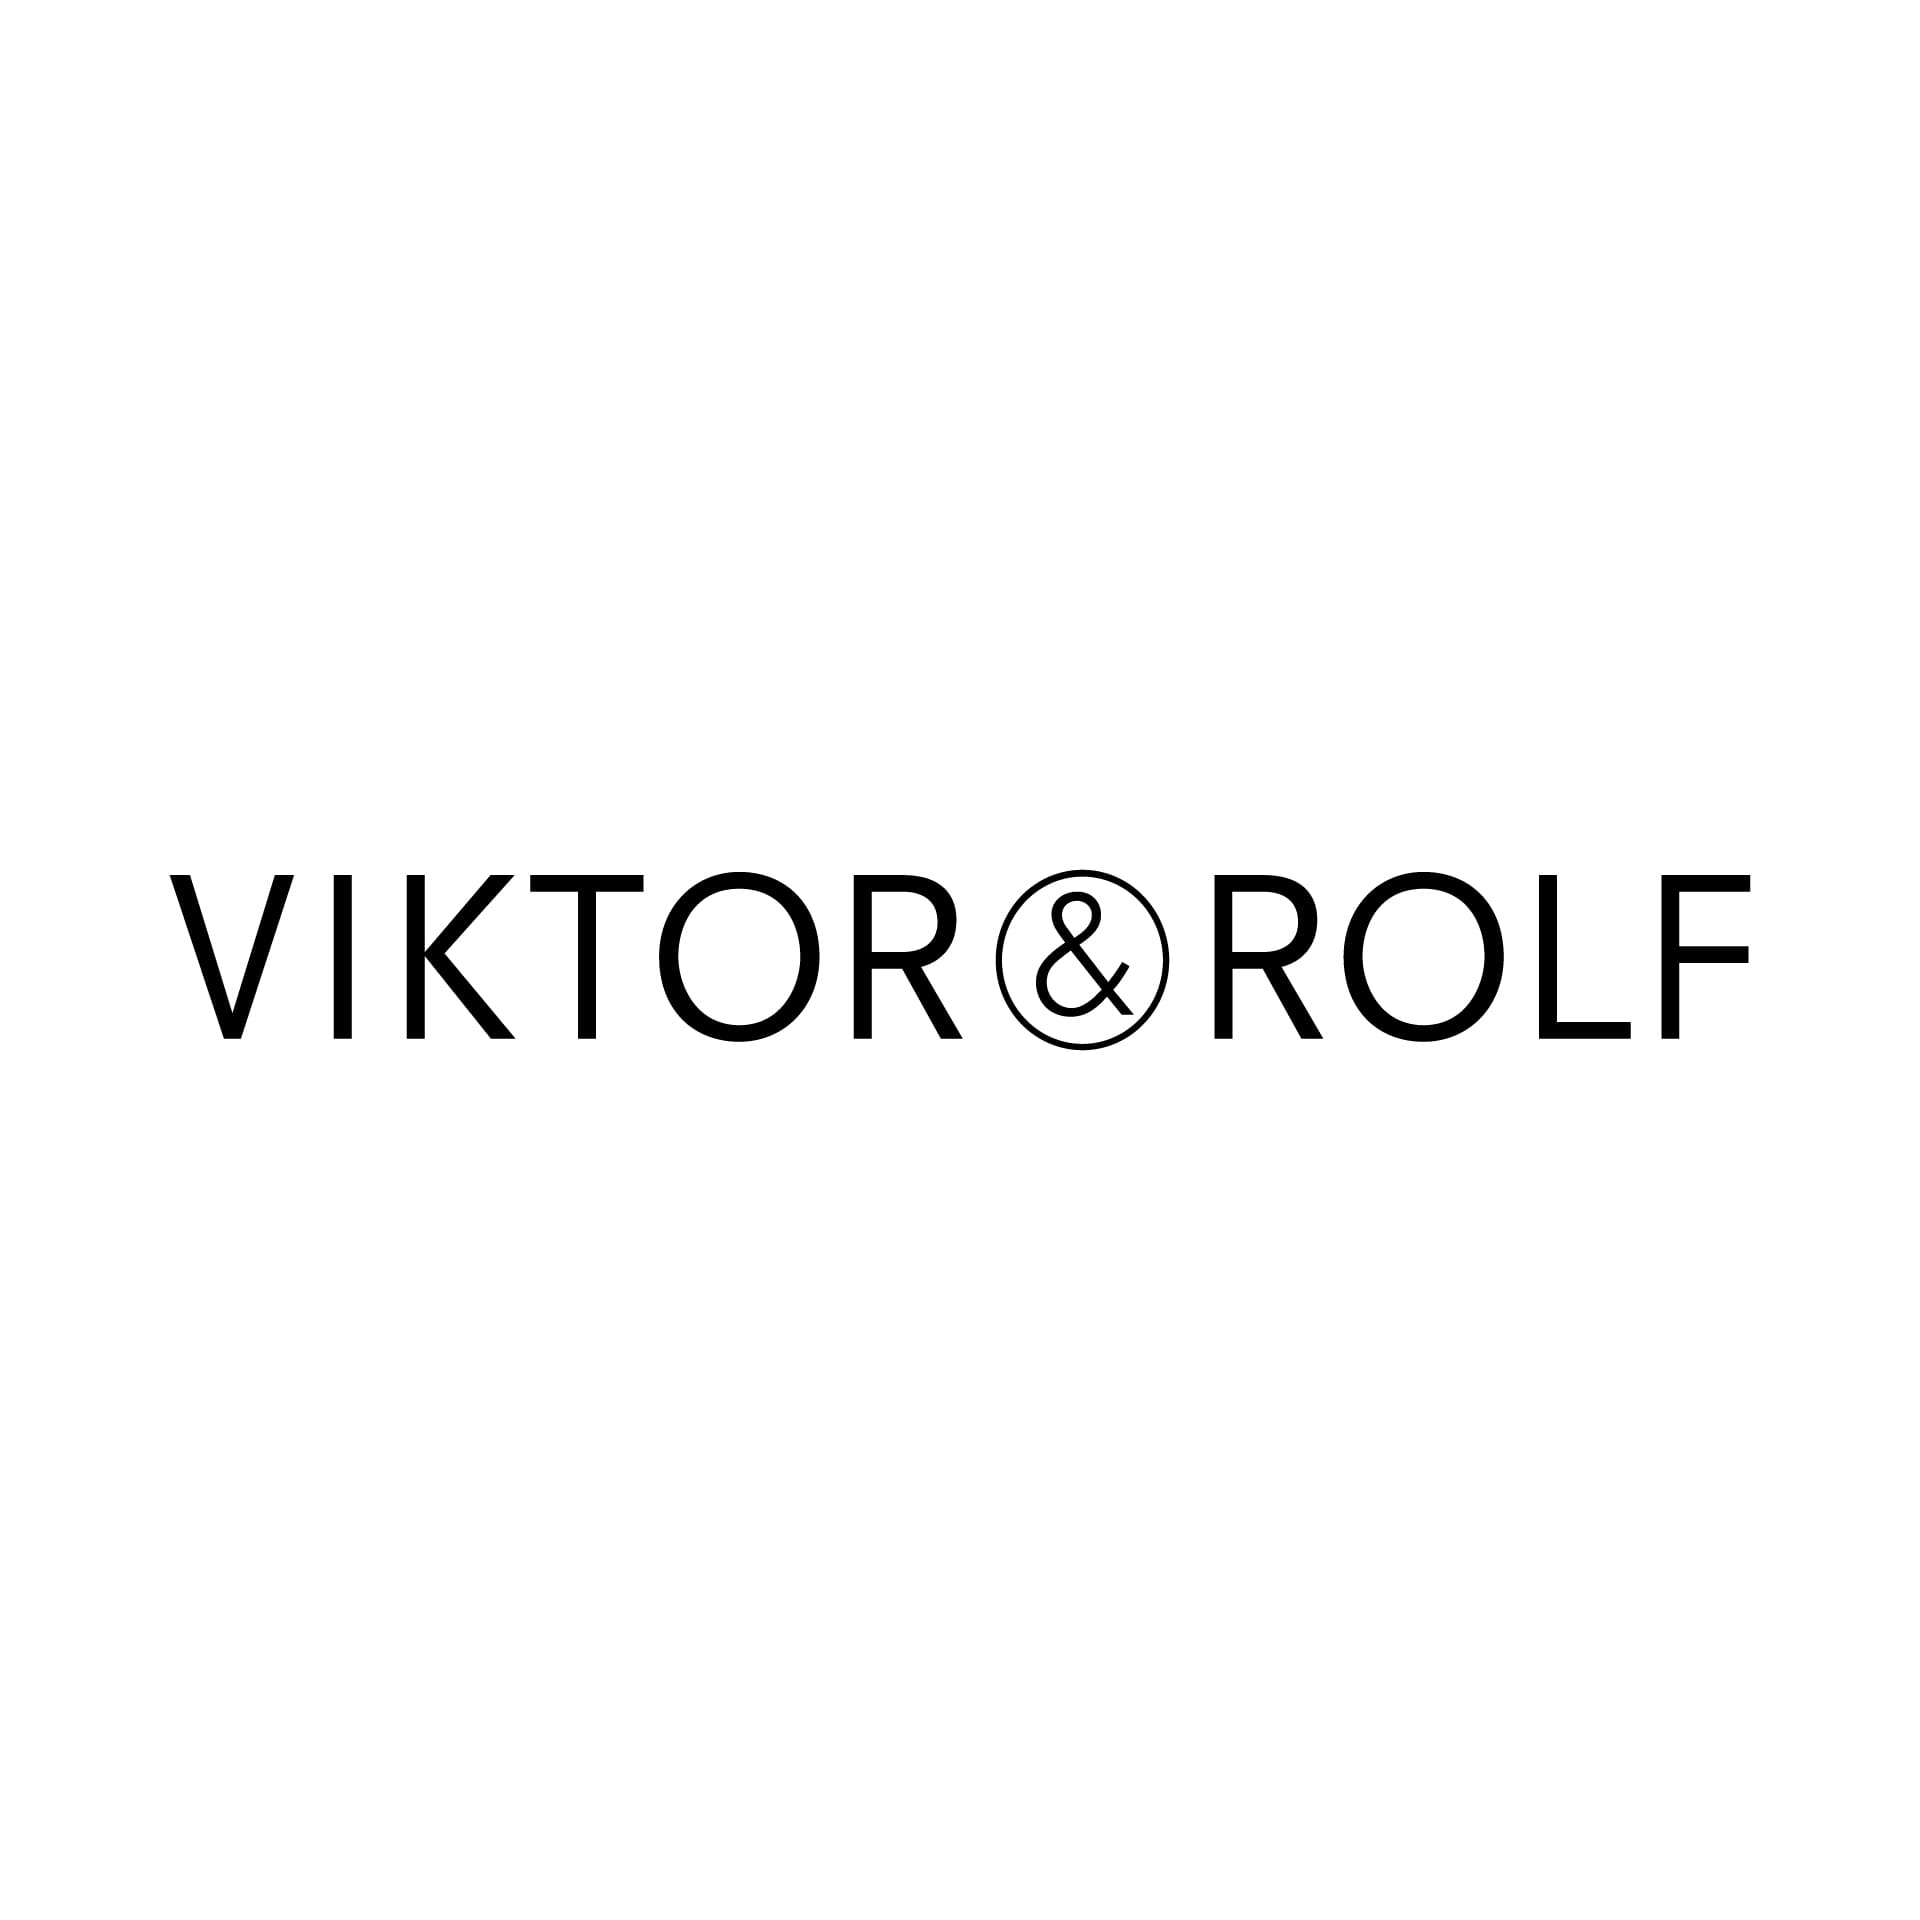 Viktor & Rolf